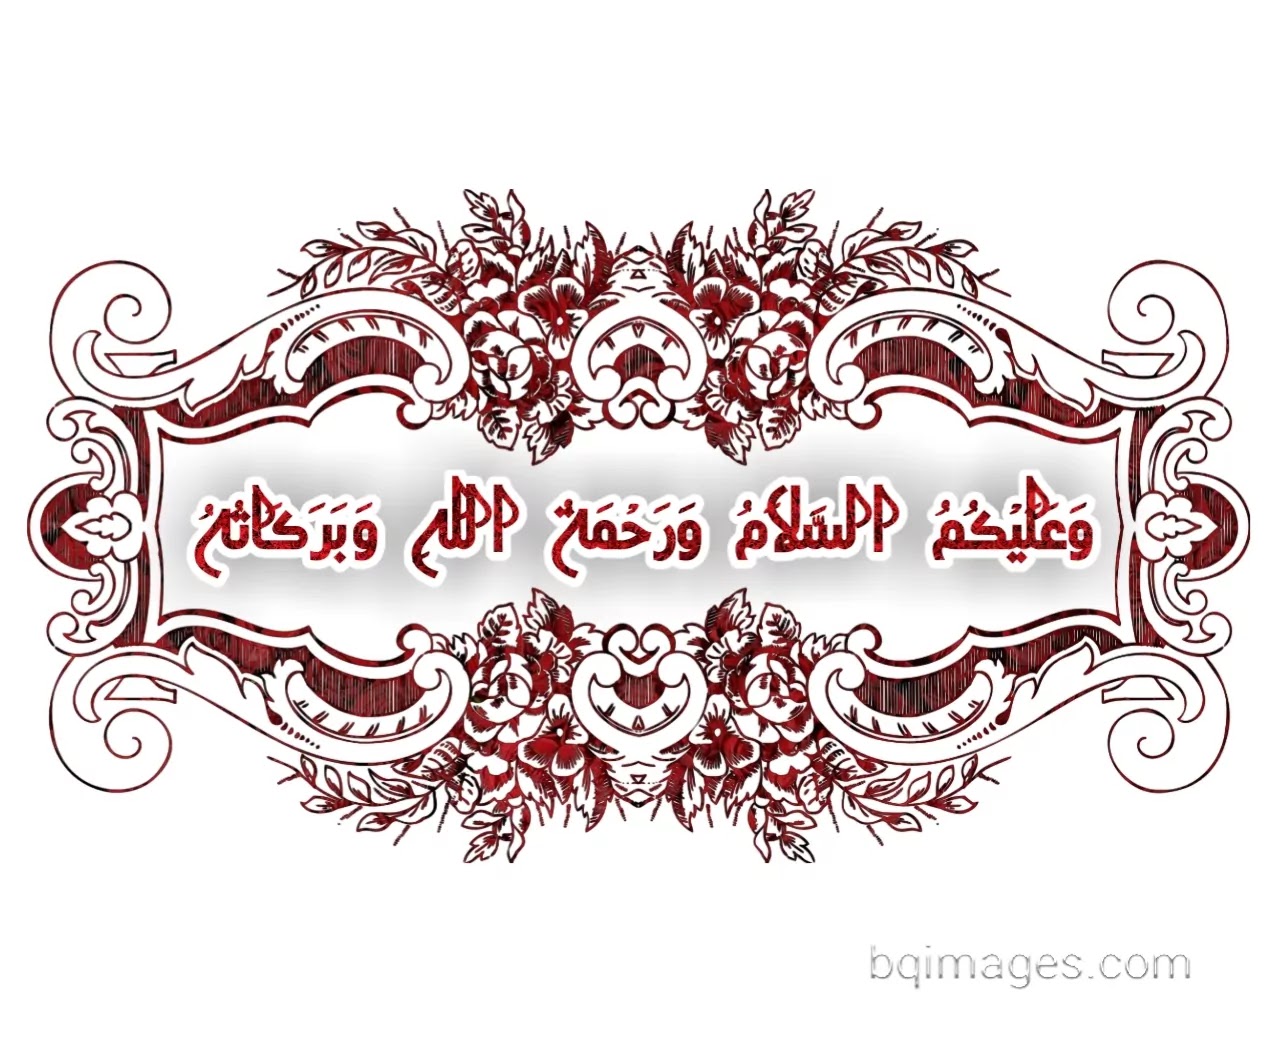 Walaikum assalam in arabic